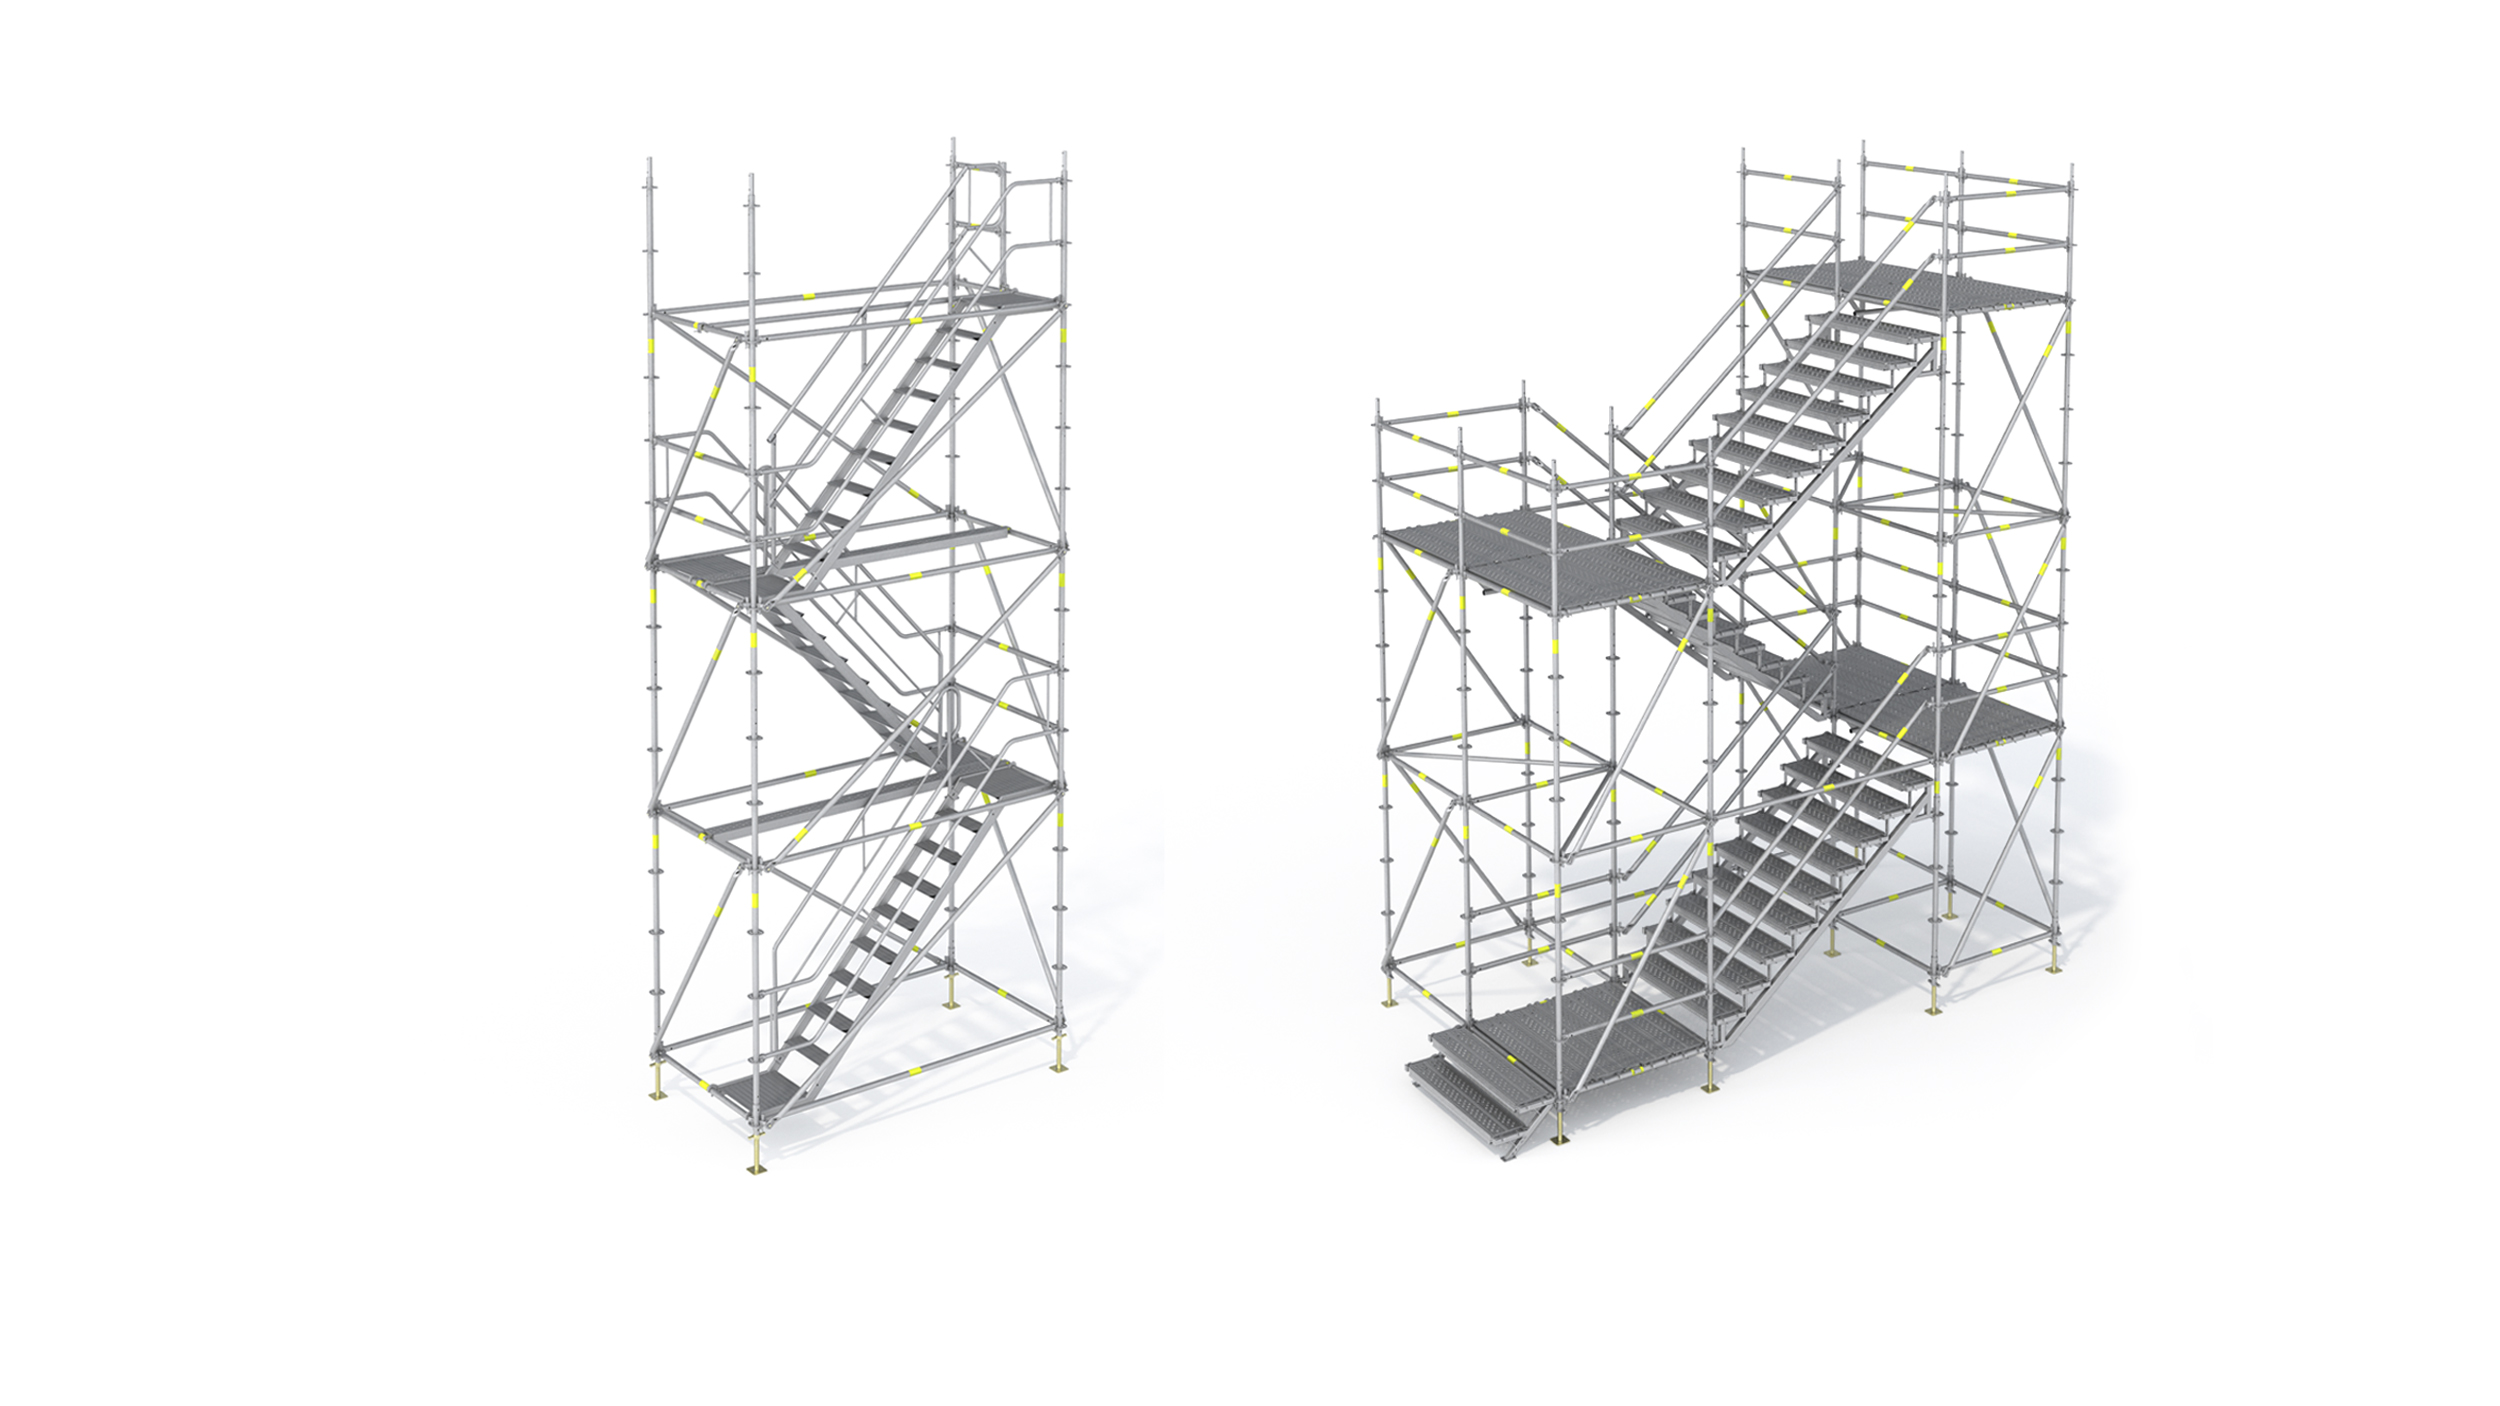 Torres de escada para acesso temporário nos canteiros de obras, passagem de pedestres em locais públicos ou para evacuação em caso de emergência. Permite diversas configurações.